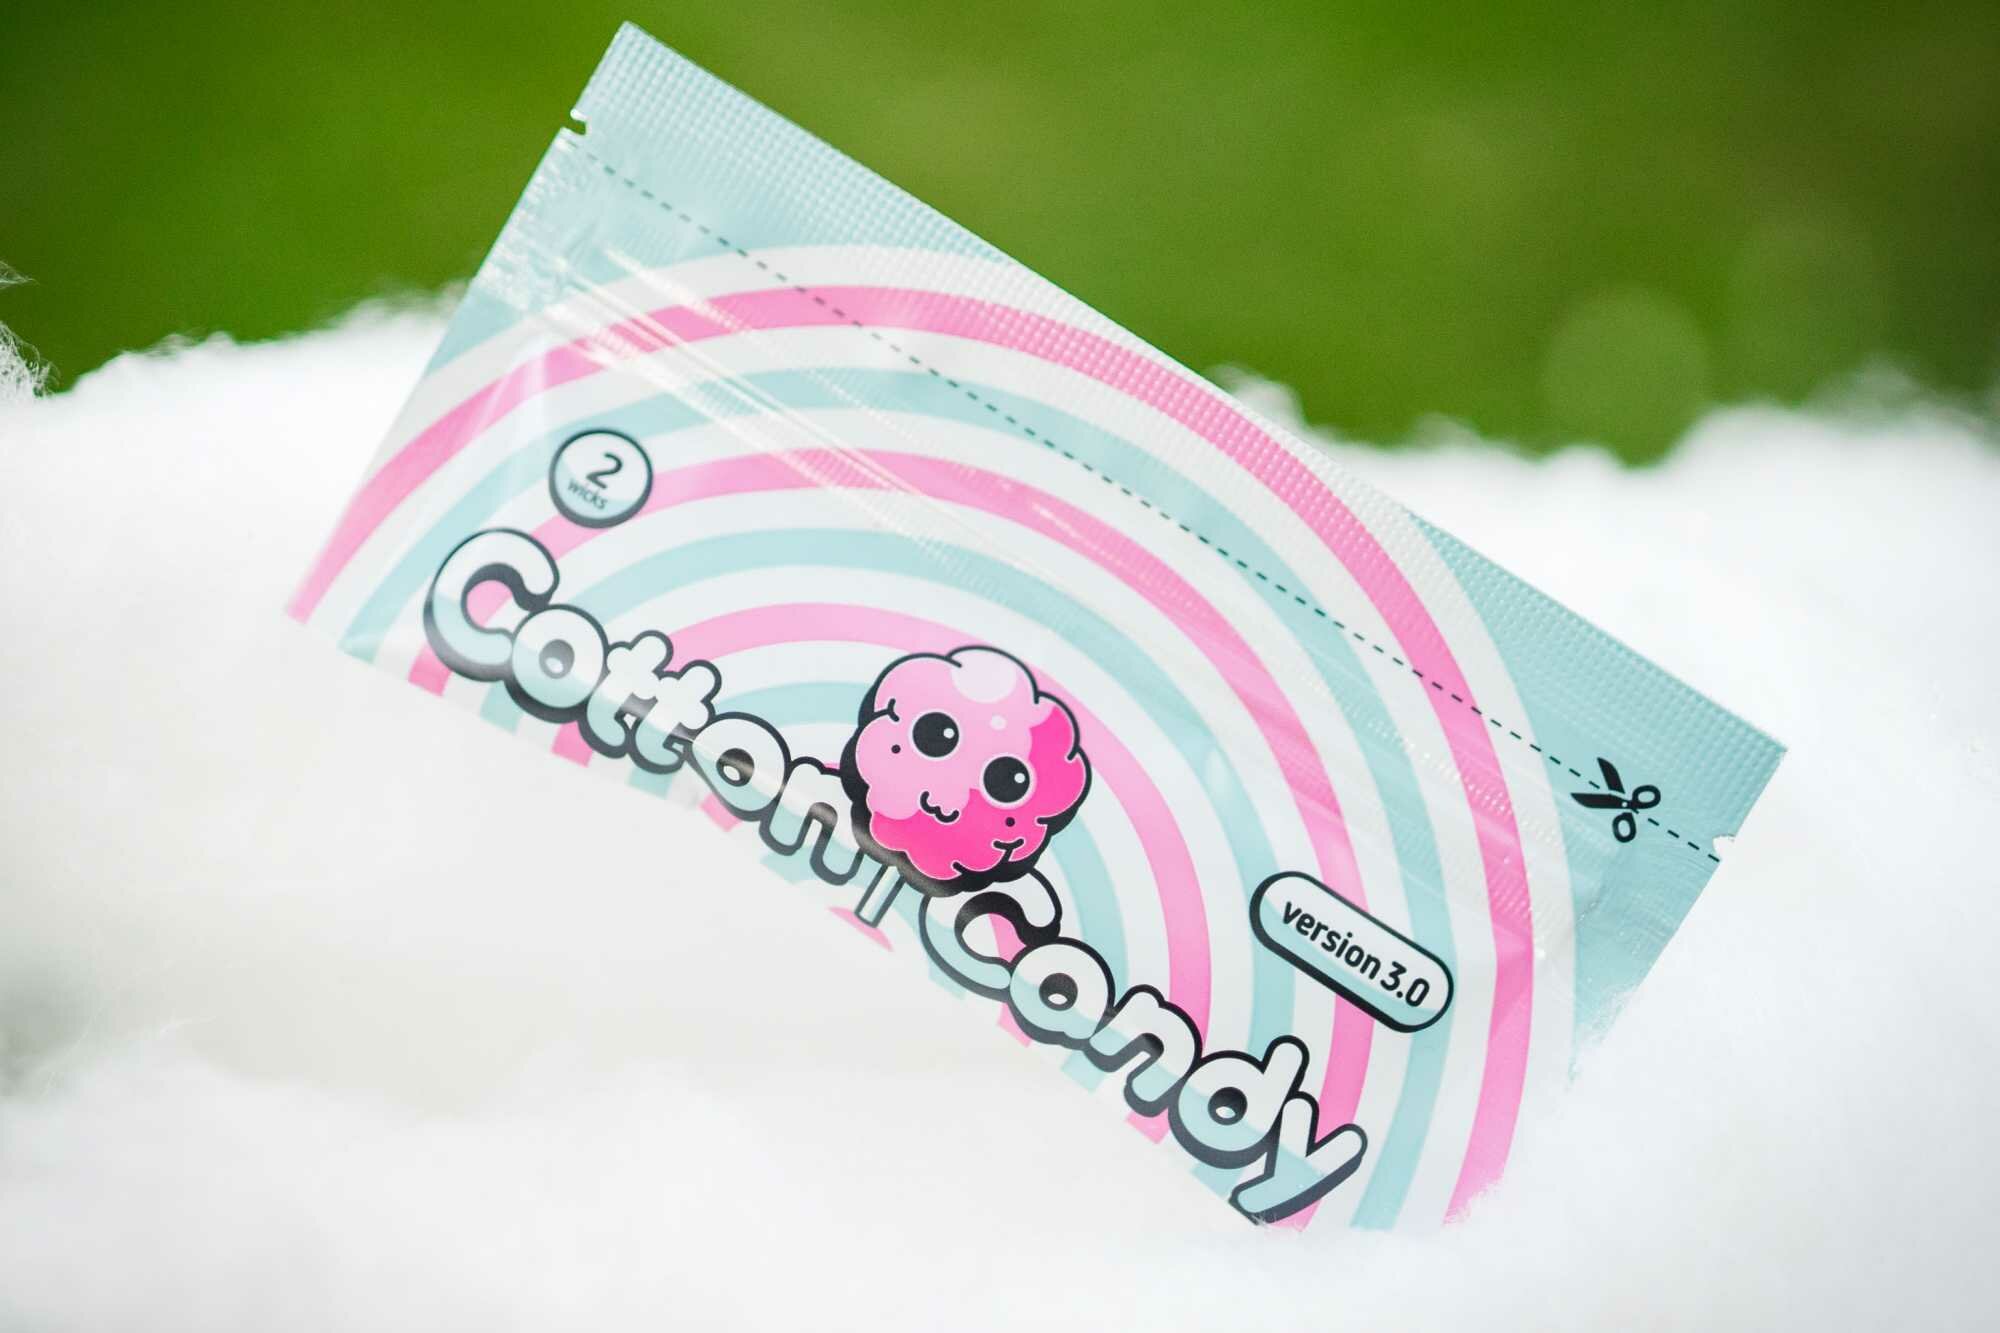 "Cotton Candy" - вата впитывающая жидкость, Японский хлопок